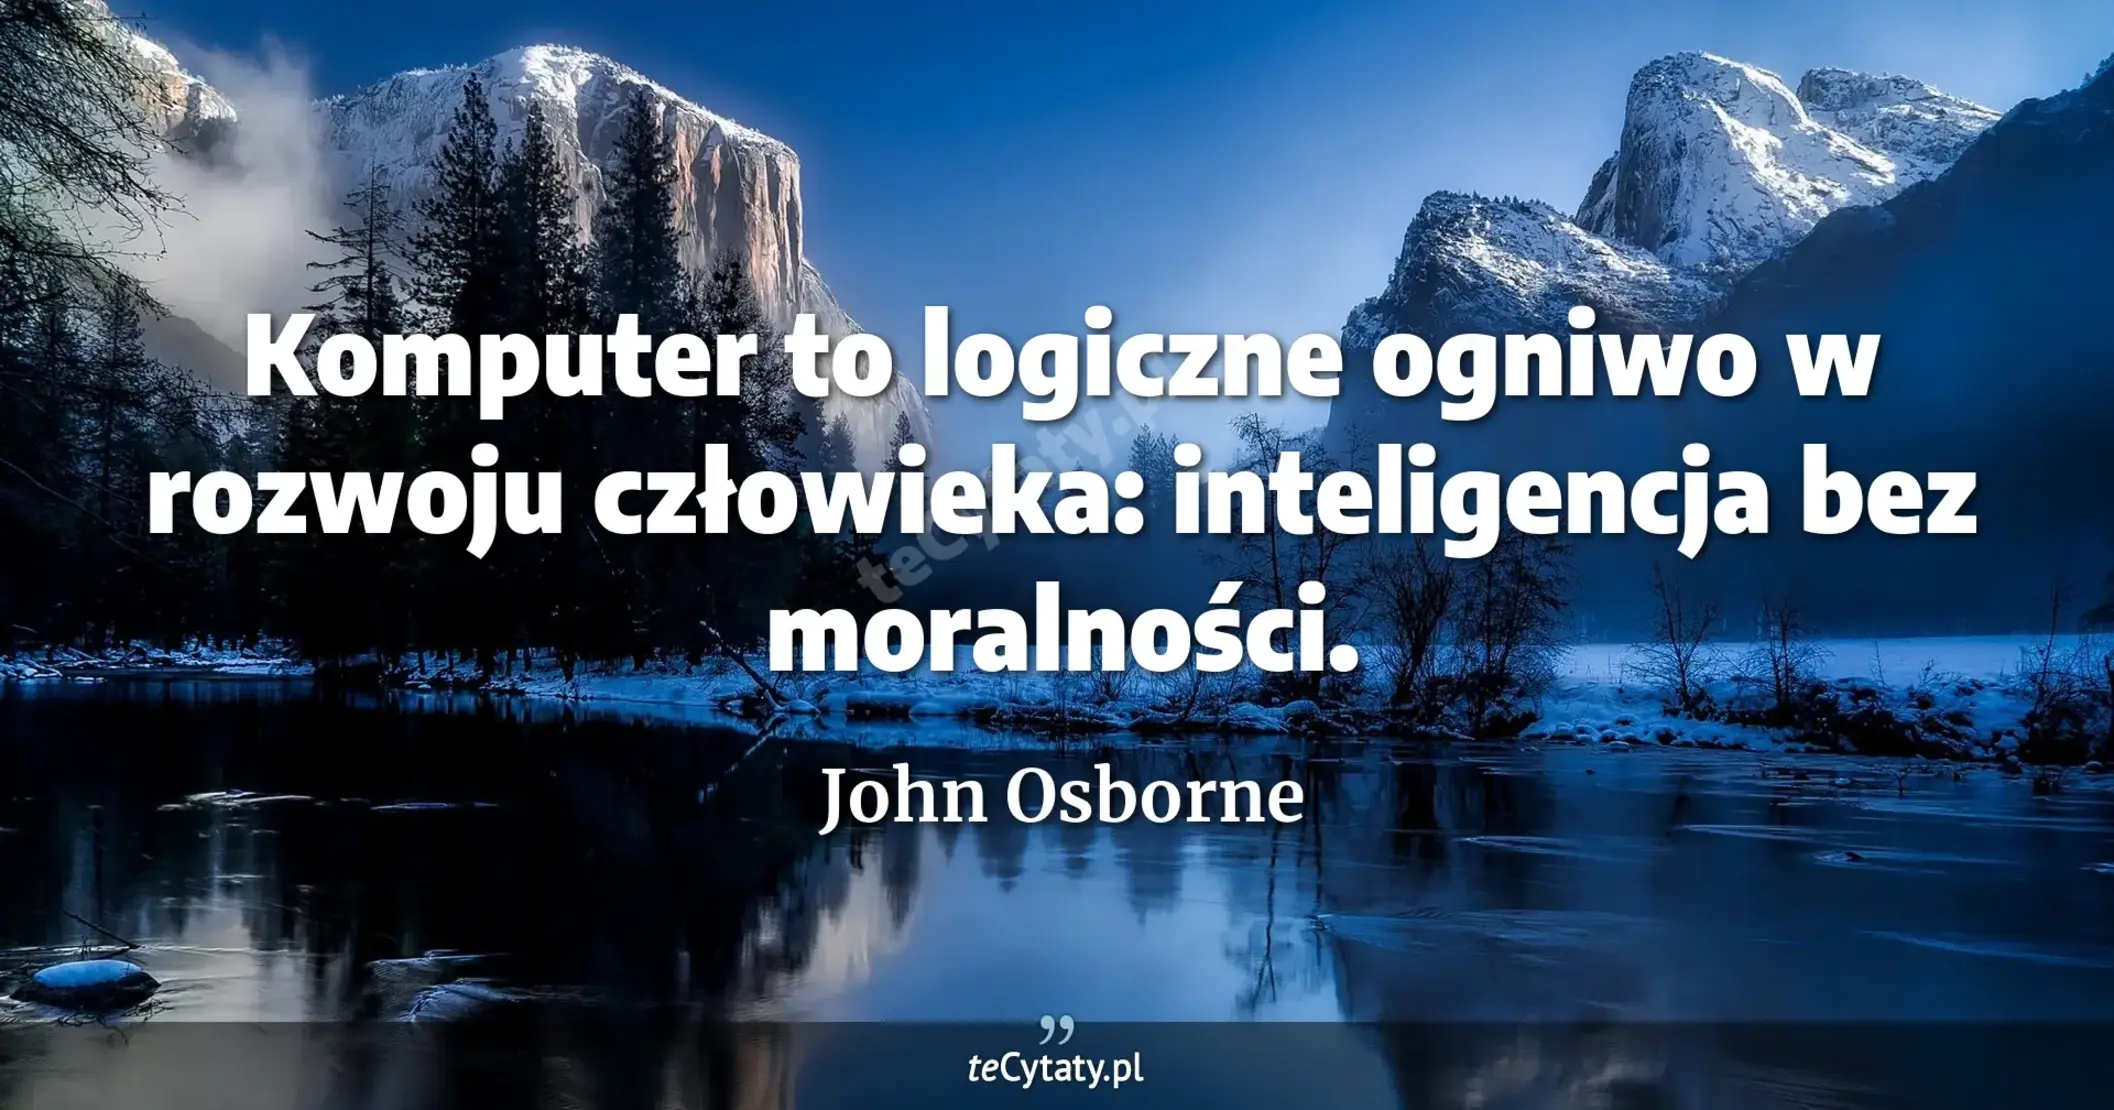 Komputer to logiczne ogniwo w rozwoju człowieka: inteligencja bez moralności. - John Osborne